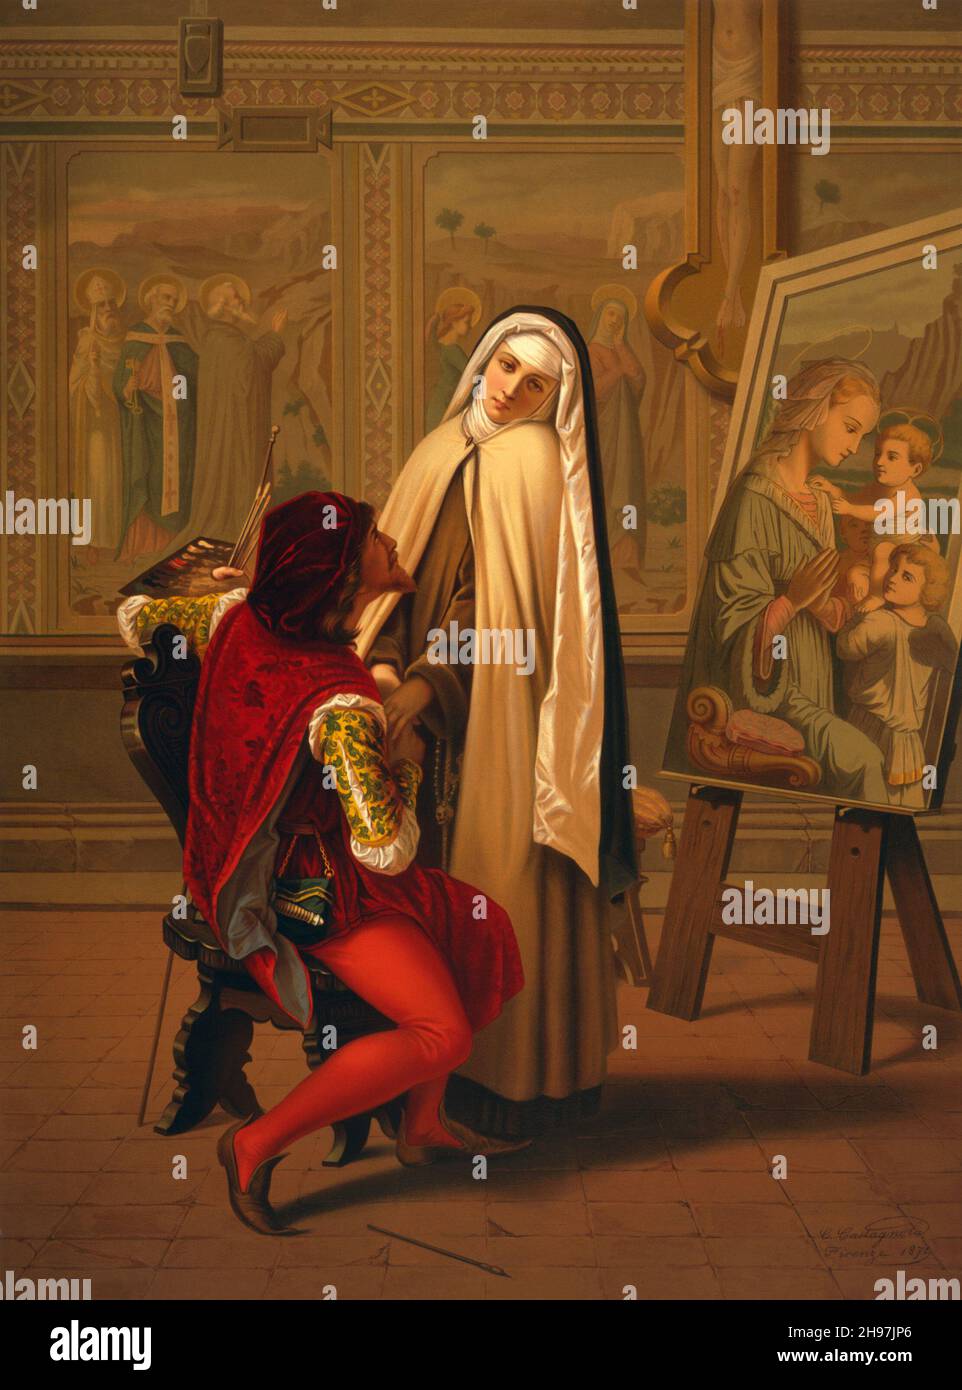 Chromolithographie „Love or Duty“ eines Malers und einer Nonne; herausgegeben in Paris von Hangard-Mangué. Sein Familienbild steht symbolisch für das, was er ihr anbietet, sollte sie ihre Gelübde brechen. Stockfoto